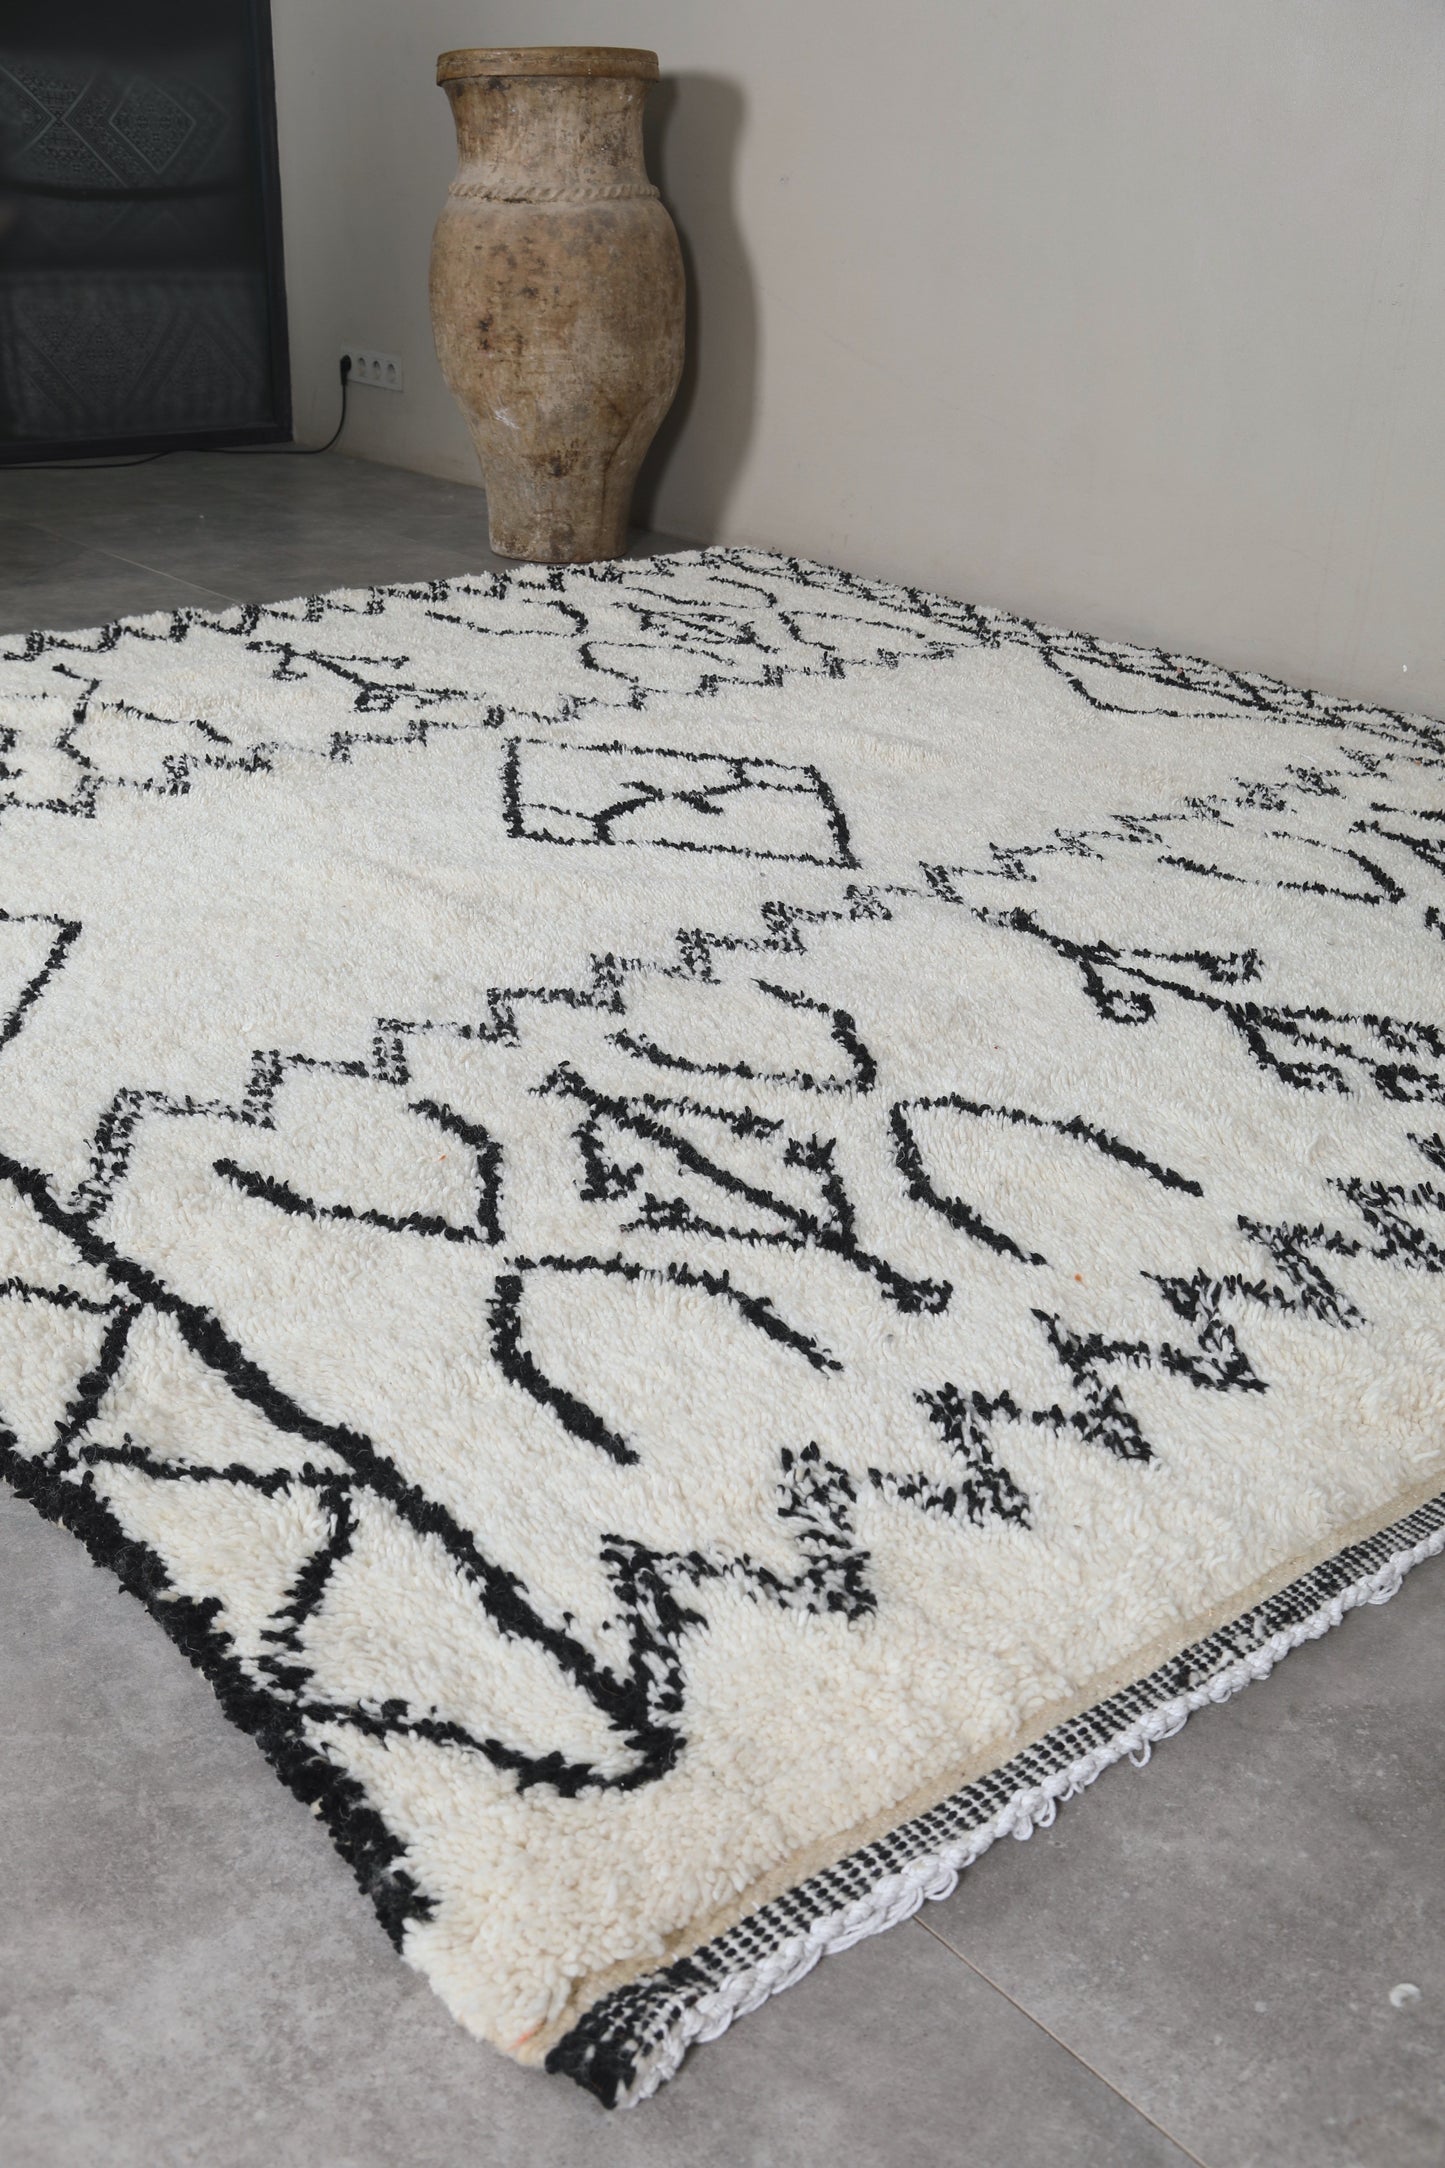 Moroccan rug 8.2 X 8.2 Feet - Azilal rugs